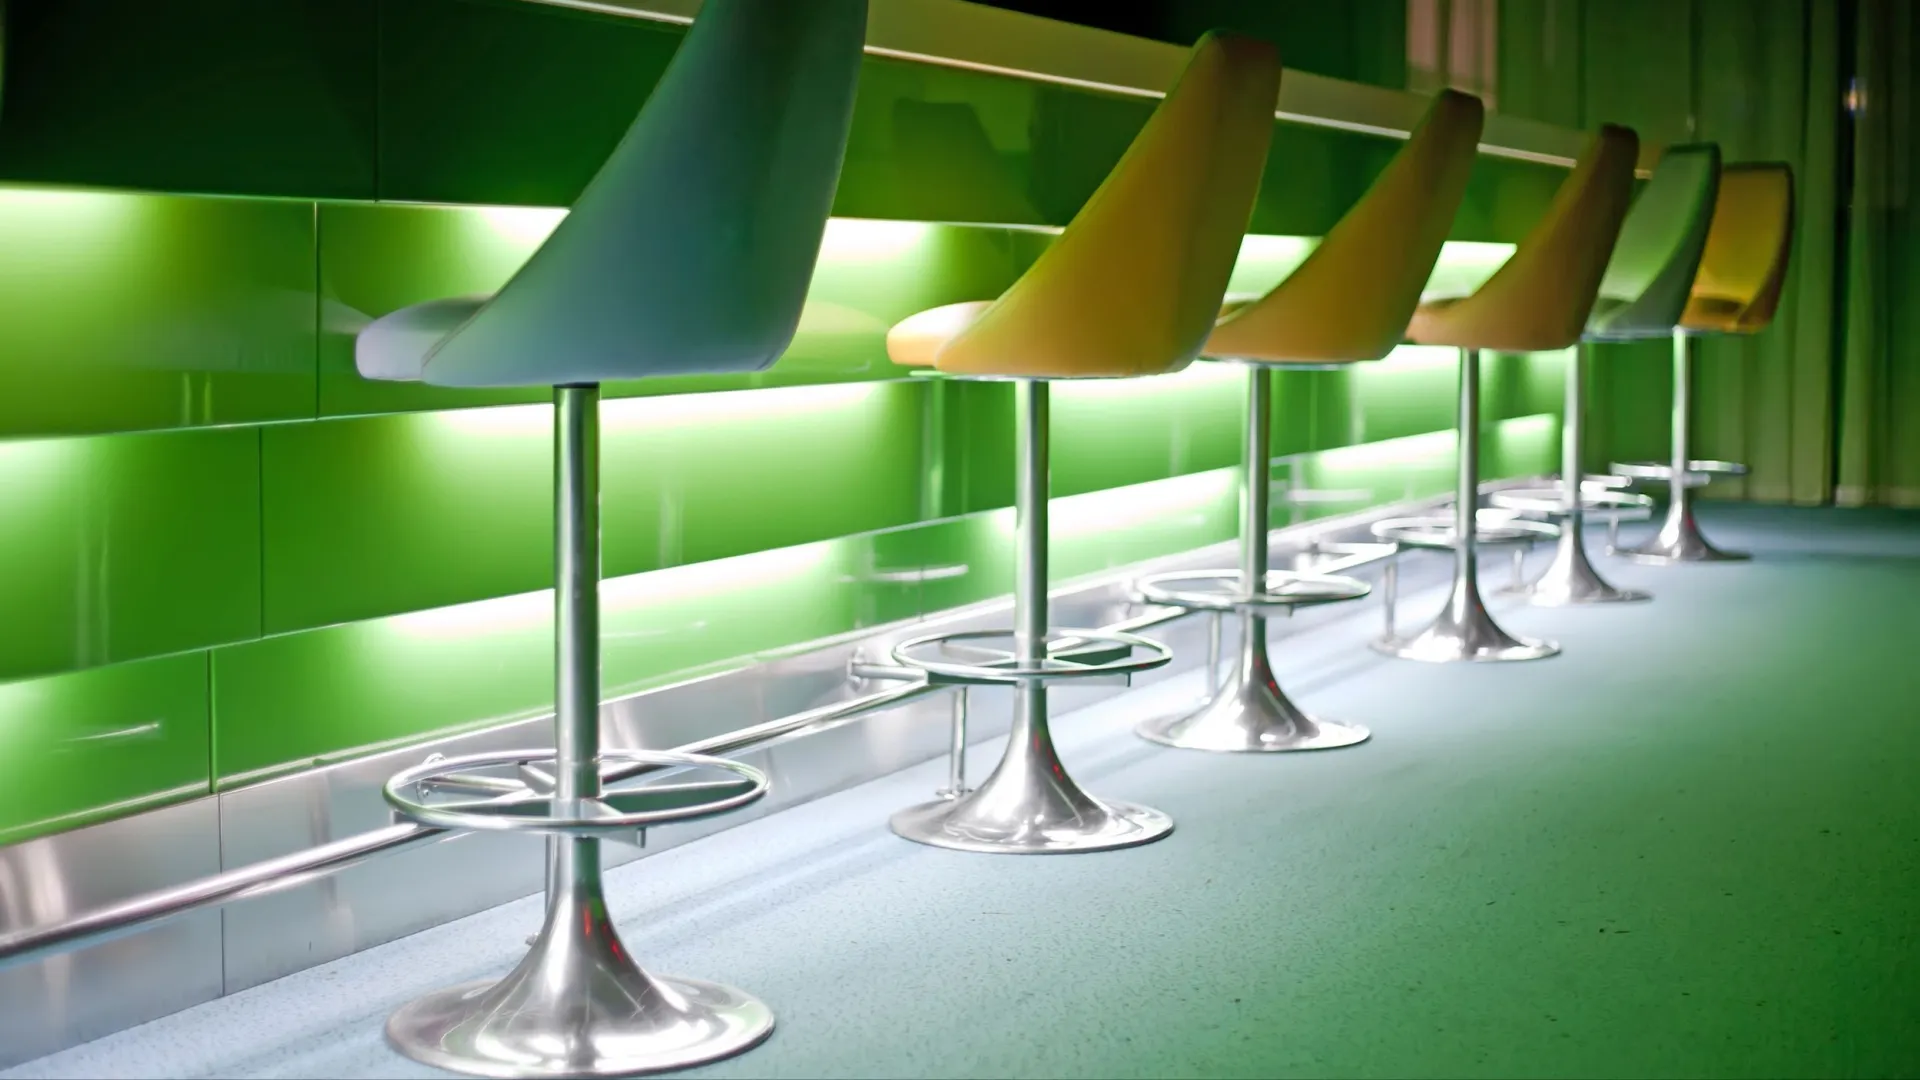 В барах и ресторанах часто используют зеленый декор. Фото: aragami12345s / Shutterstock / Fotodom